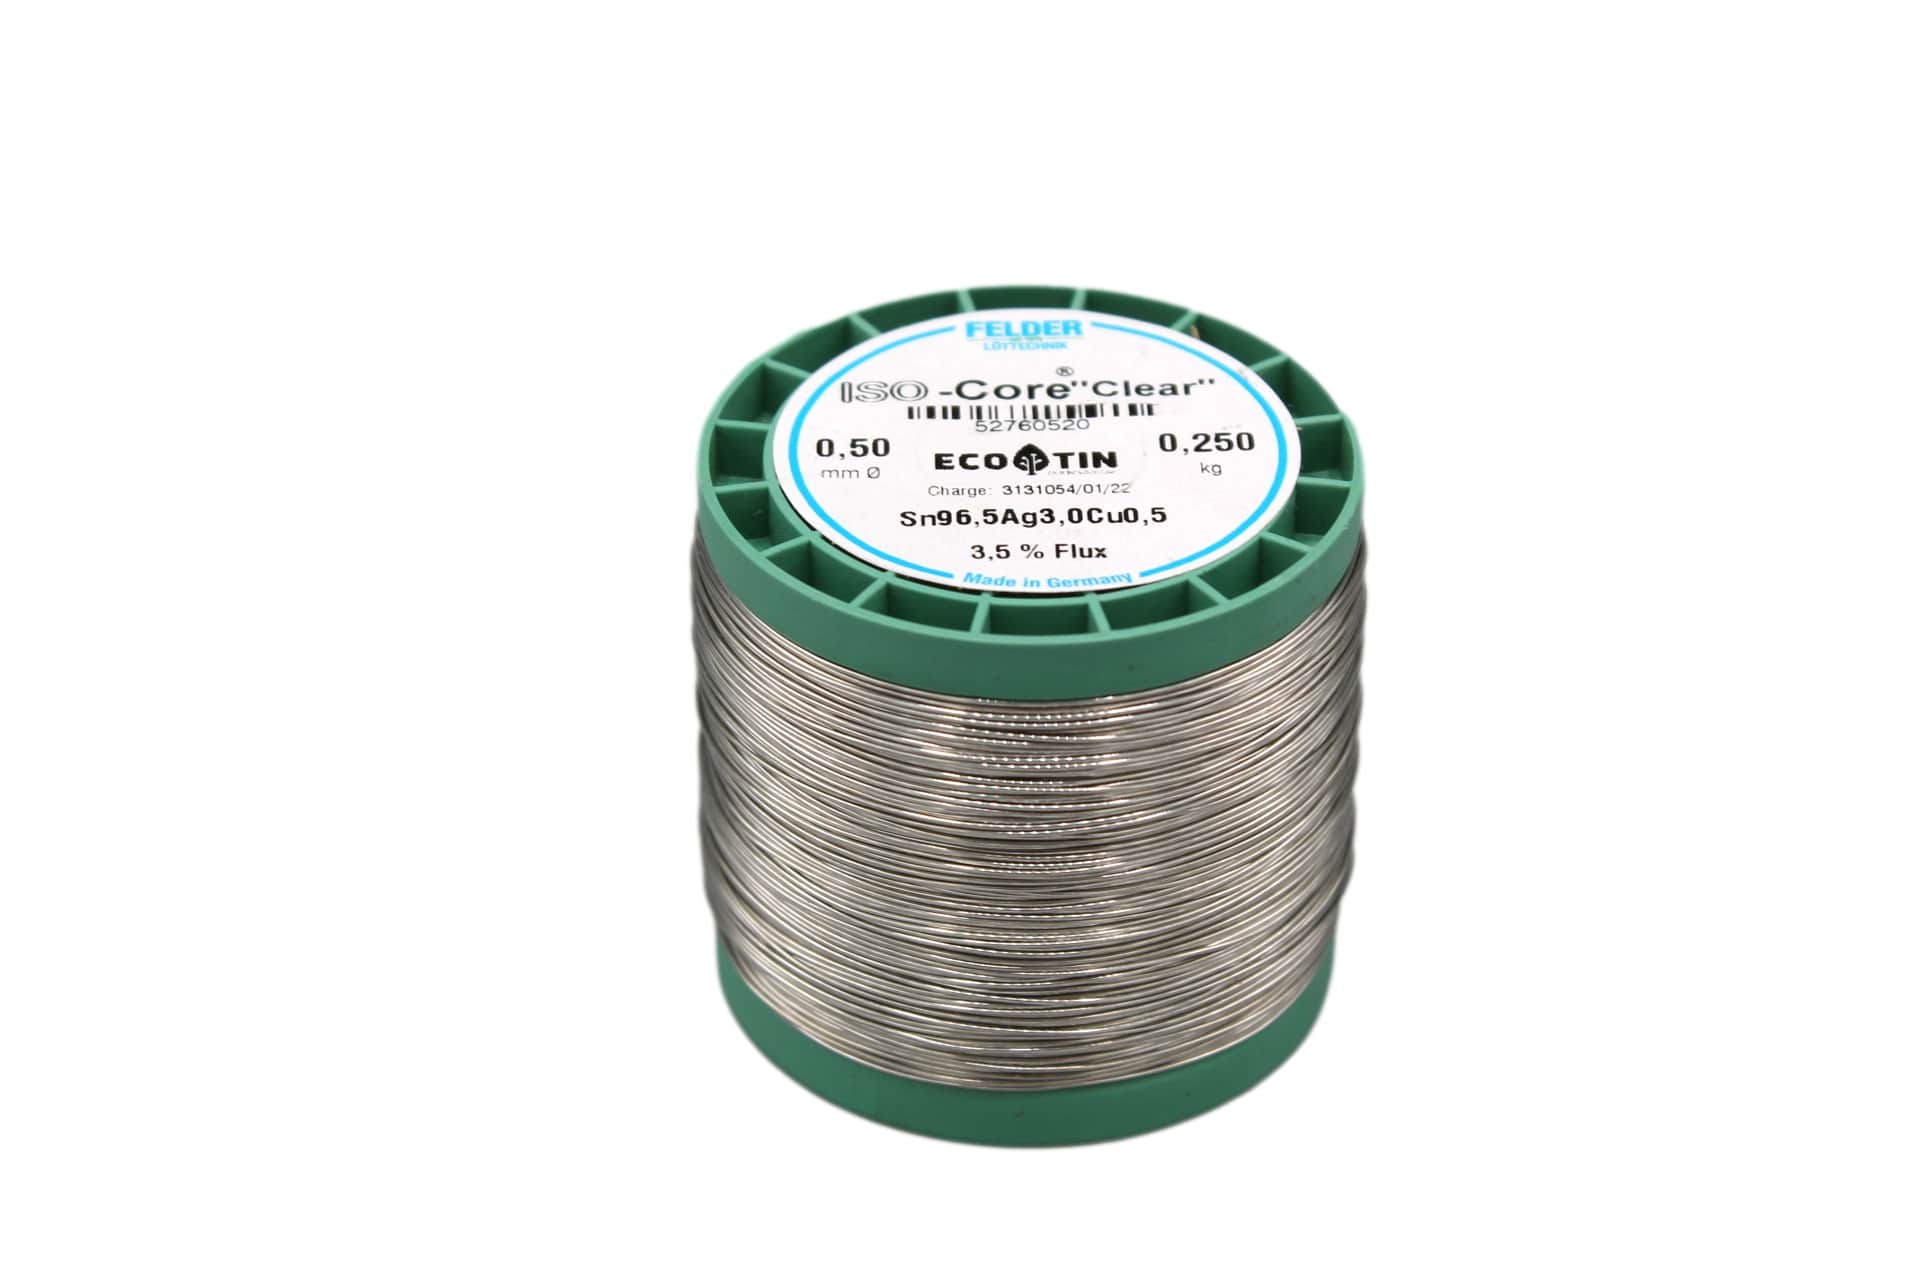 52760520 Felder solder wire, lead-free, SAC (Sn96,5Ag3,0Cu0,5), 0.5 mm, 250g, roll